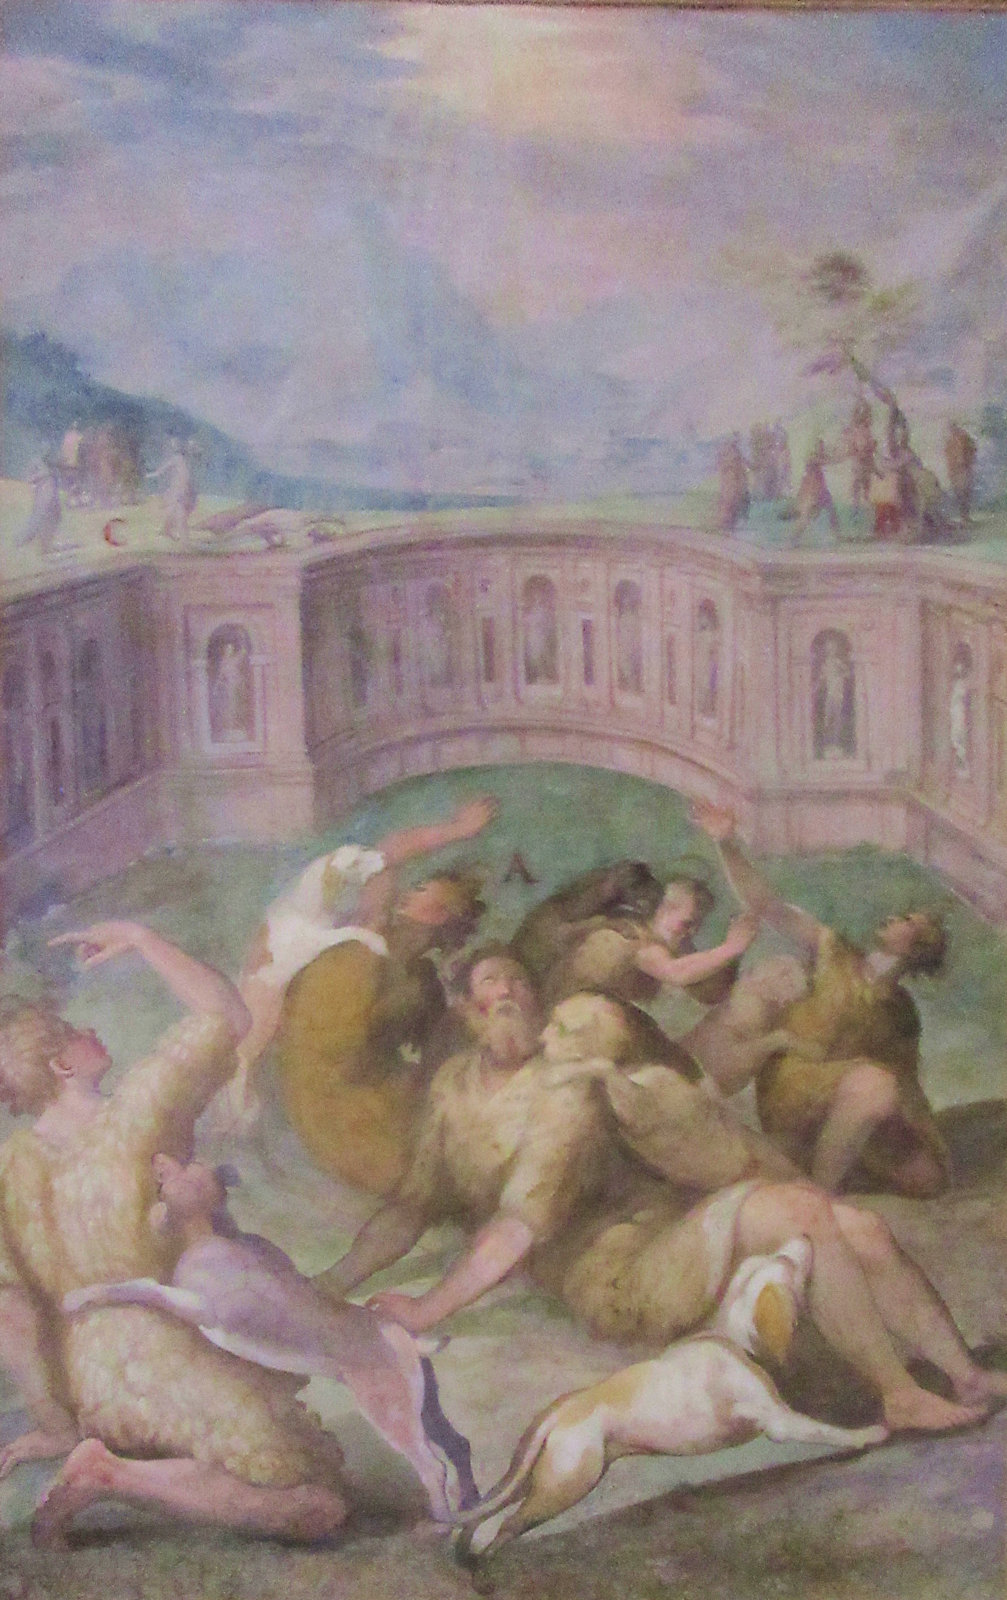 Gervasius' und Protasius' Martyrium, Fresko, um 1600, in der Kirche San Stefano Rotondo in Rom